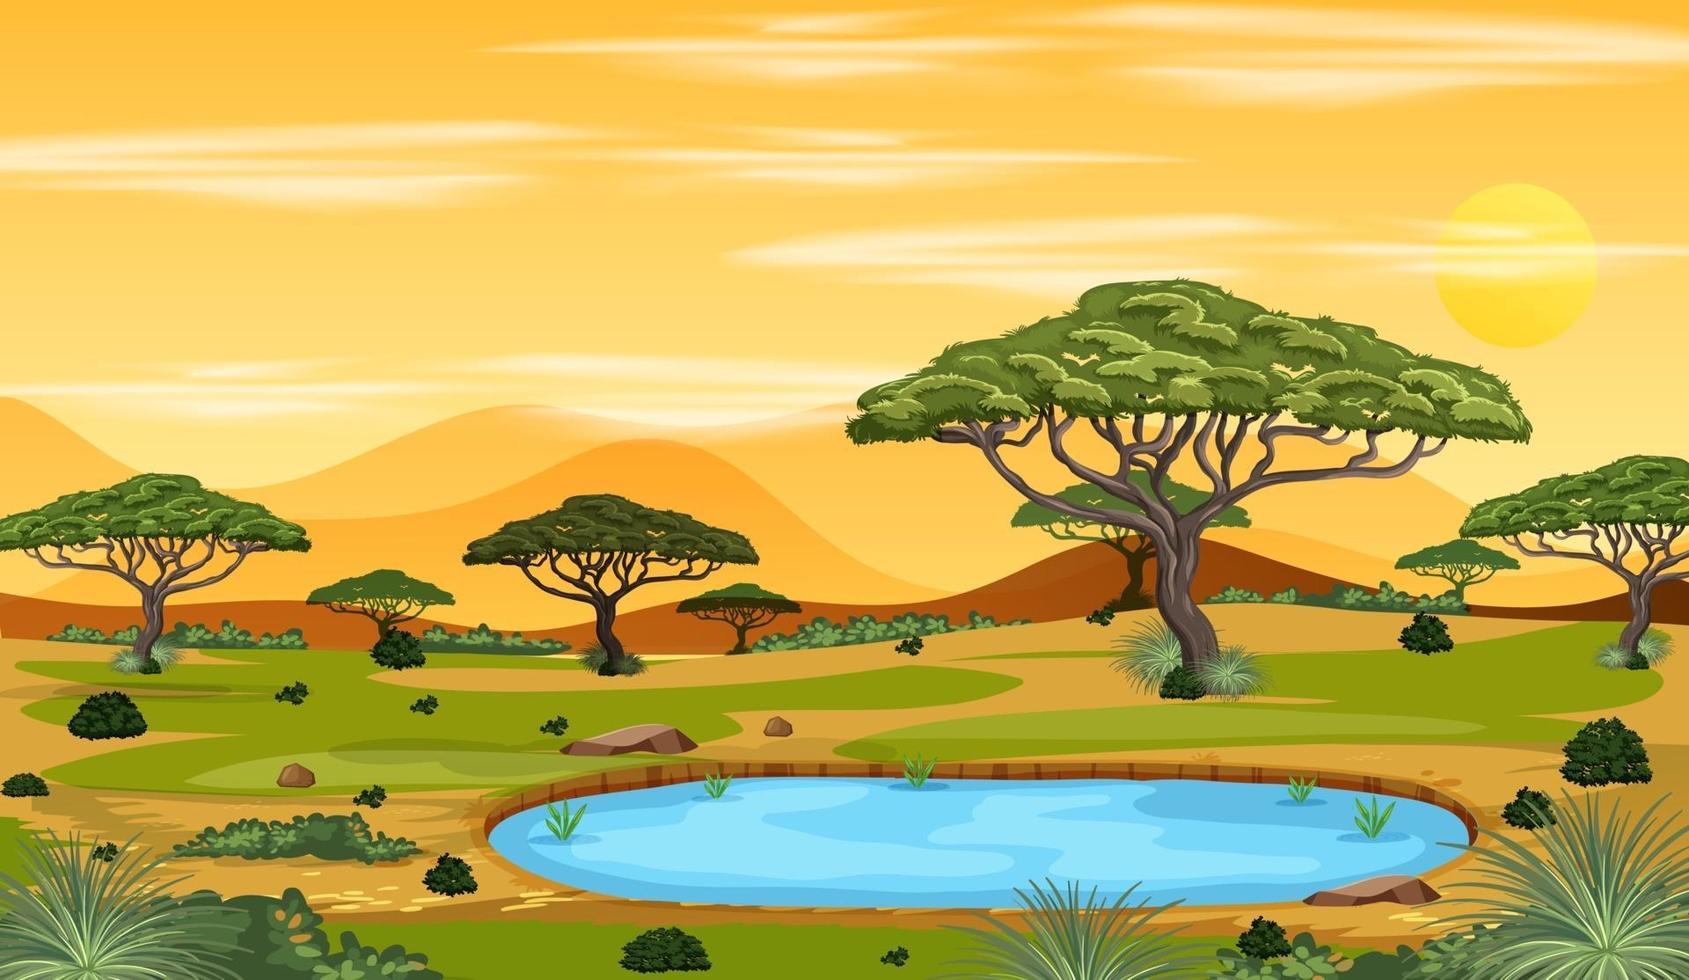 afrikansk savann skog landskap scen vid solnedgången vektor